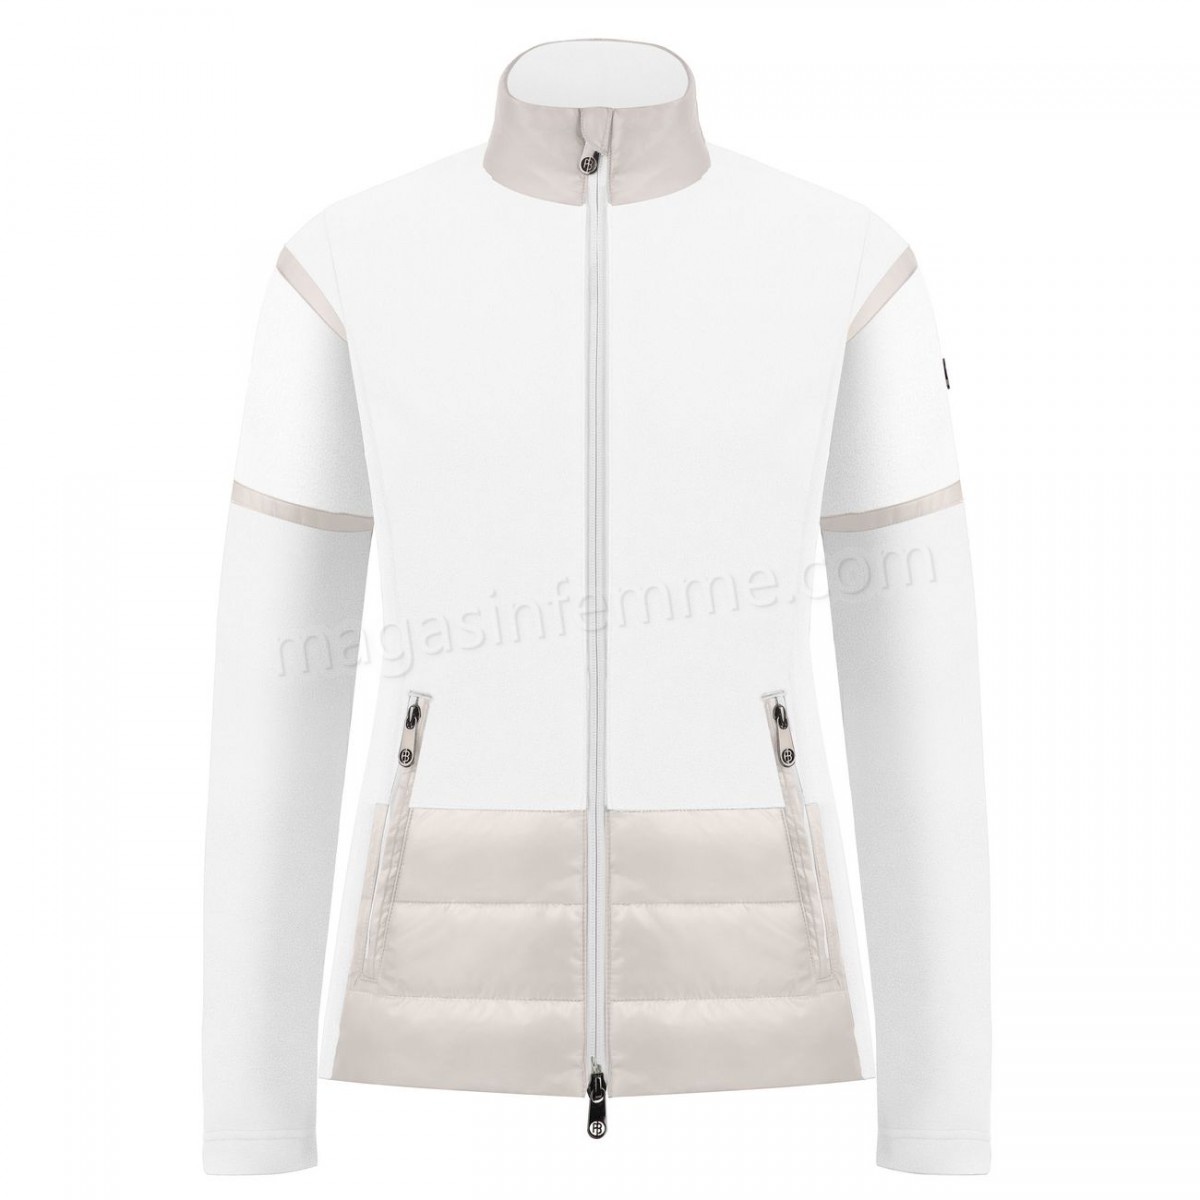 Poivre Blanc-Sports d'hiver femme POIVRE BLANC Veste Polaire Poivre Blanc Hybrid Fleece Jacket 1601 Multico White Femme en solde - -1